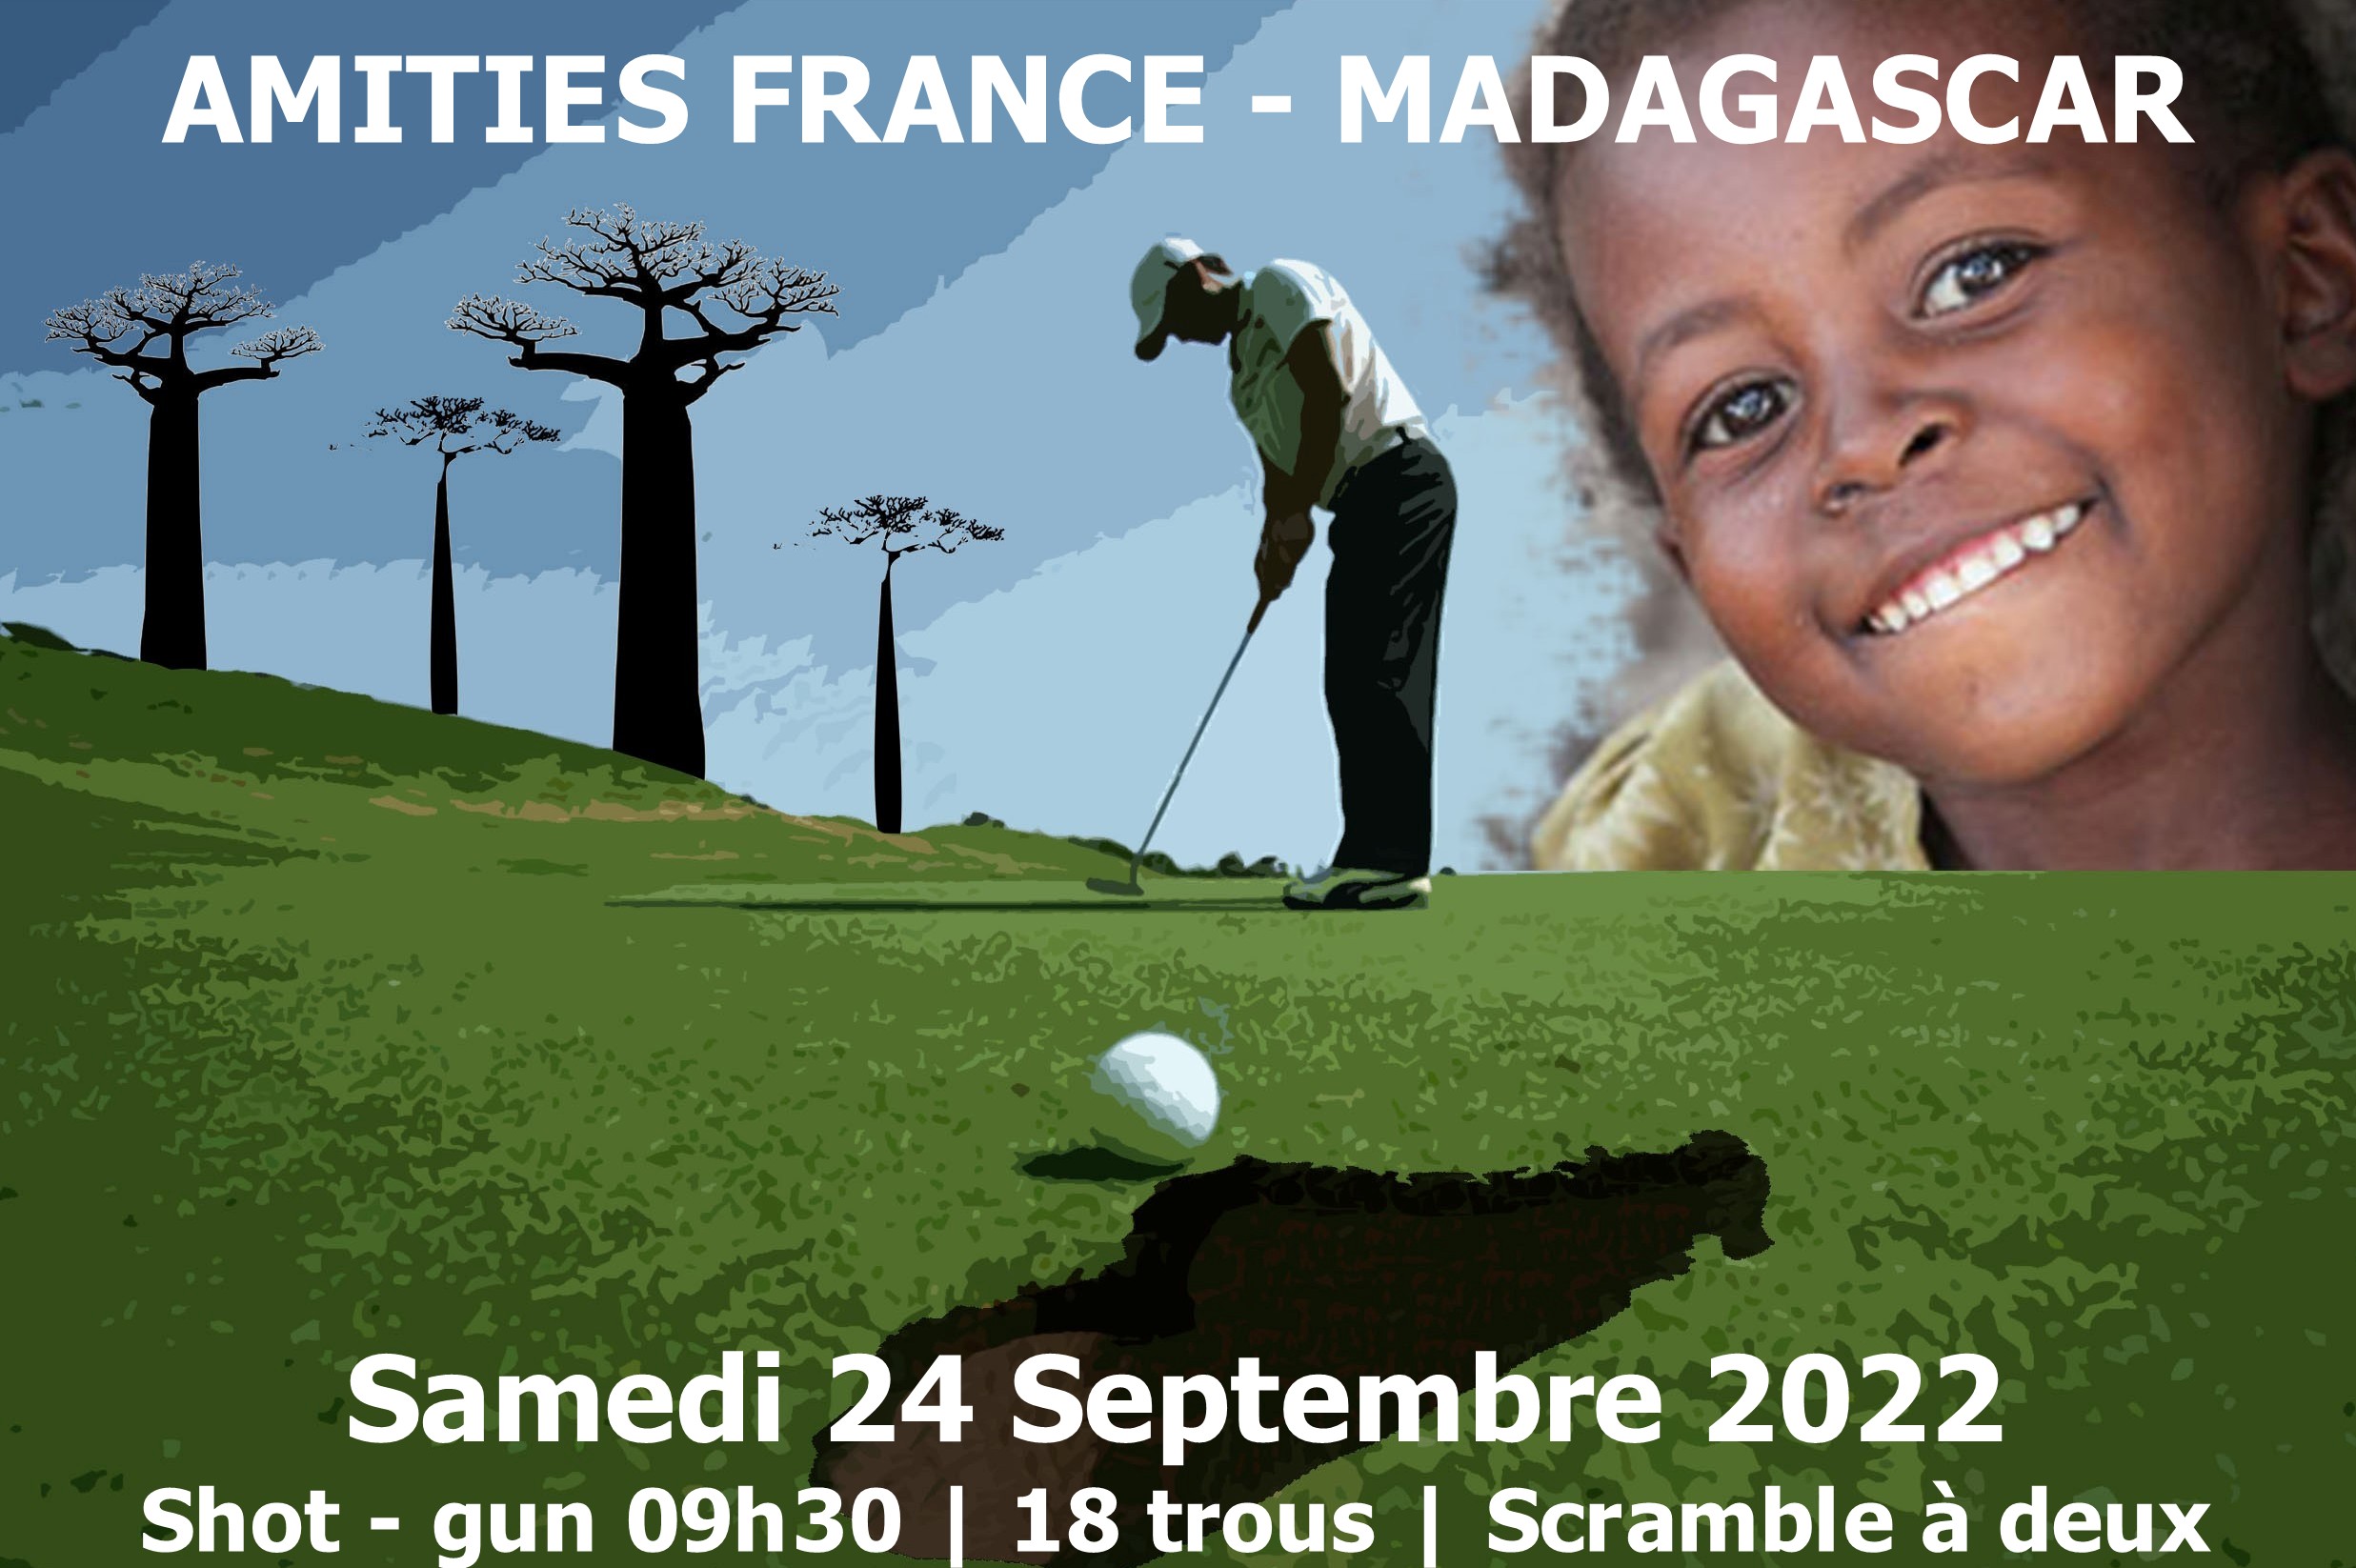 Amitiés France Madagascar